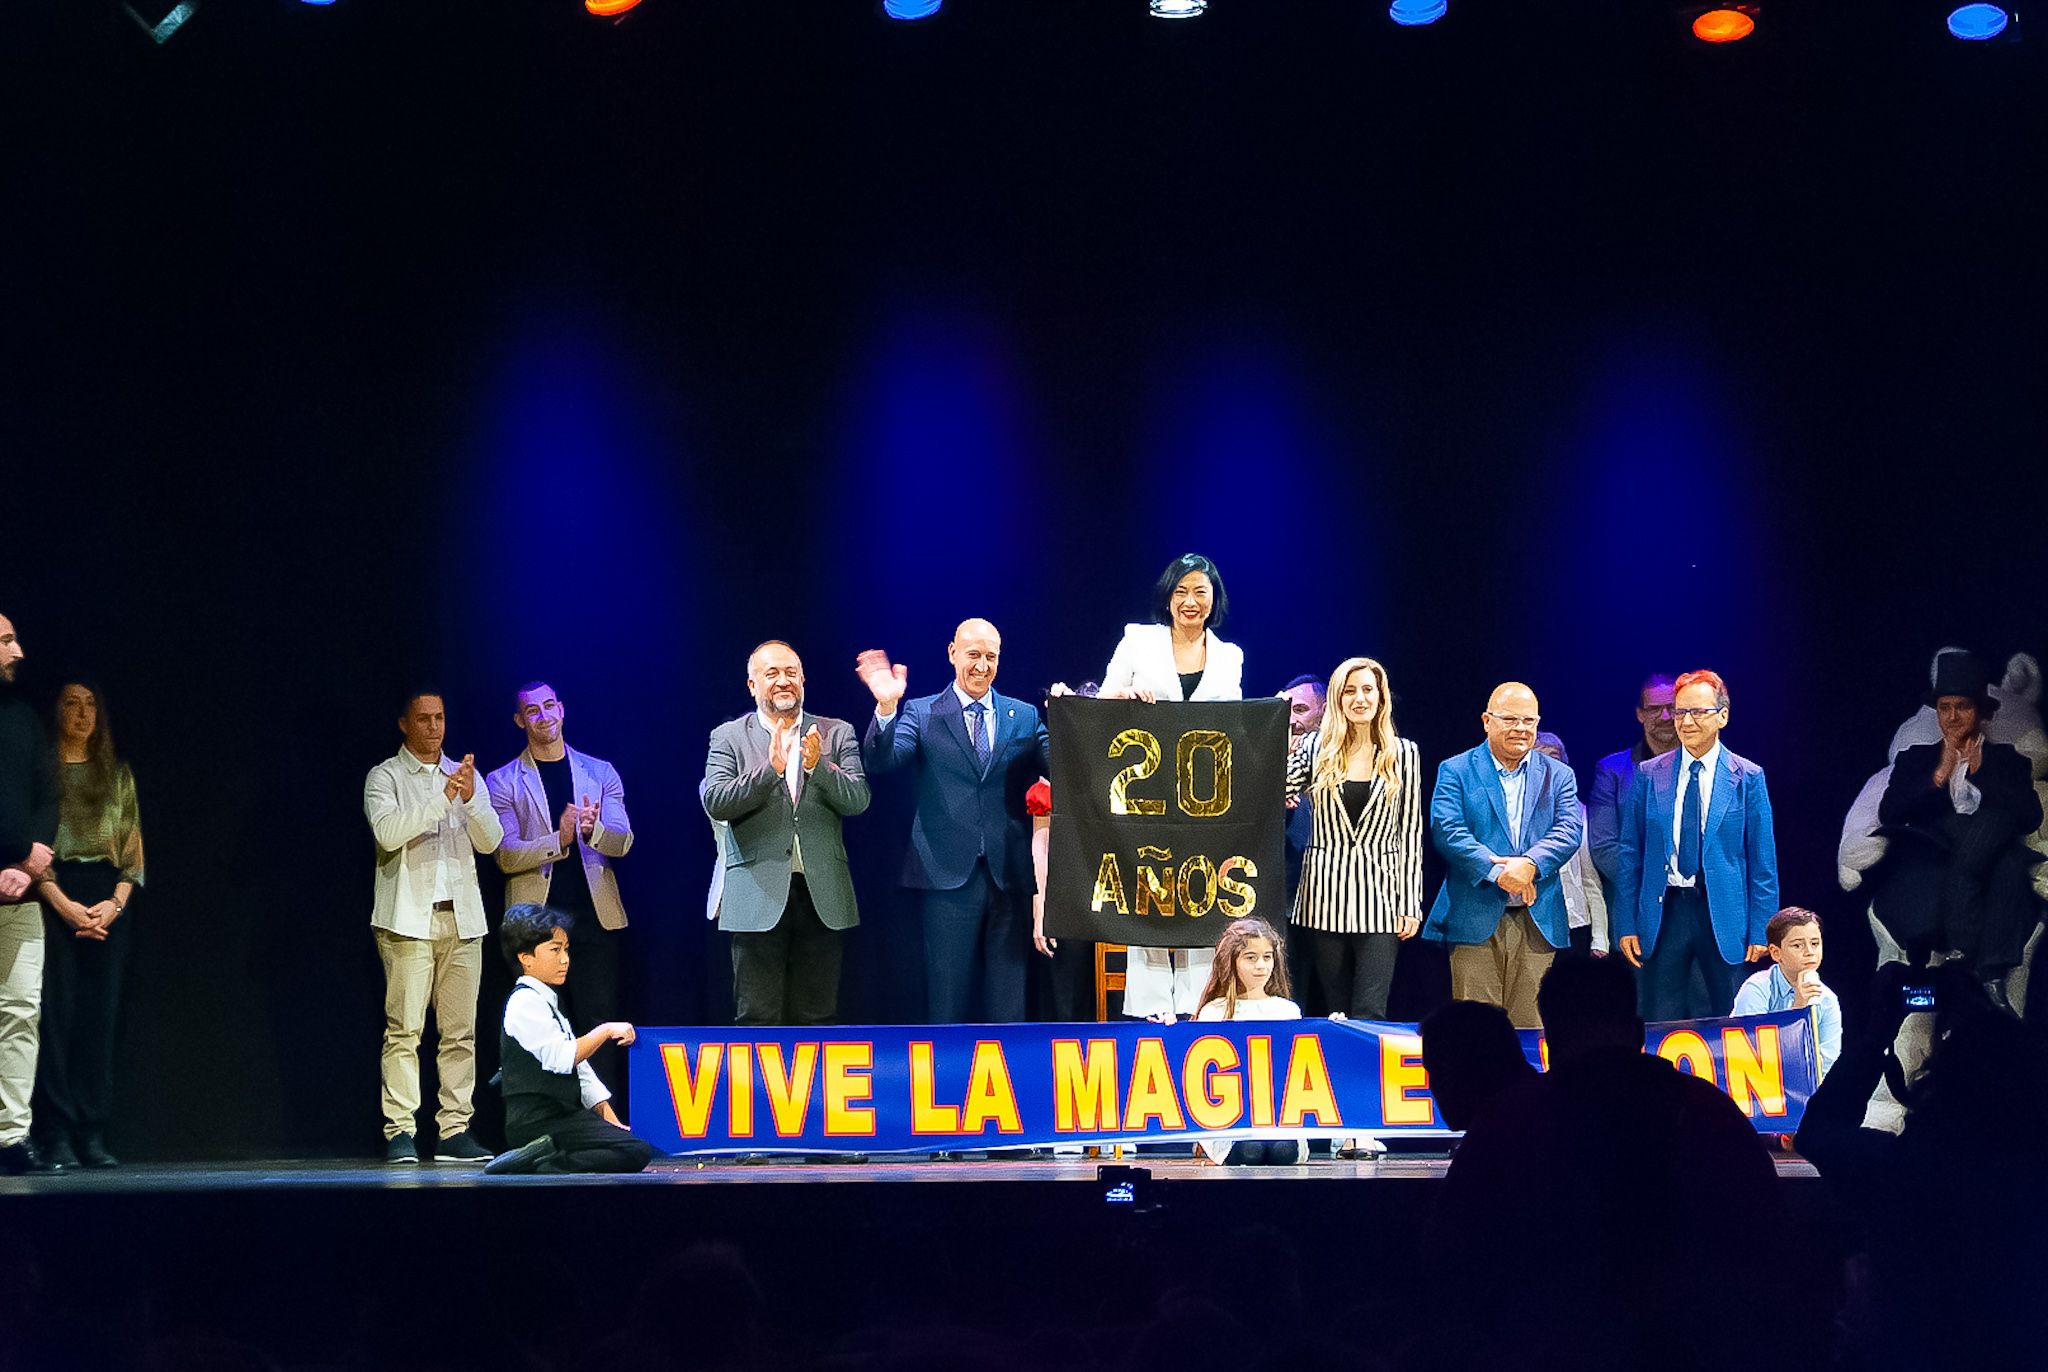 El Festival Internacional Vive la Magia llegará a más de 300 localidades de Castilla y León